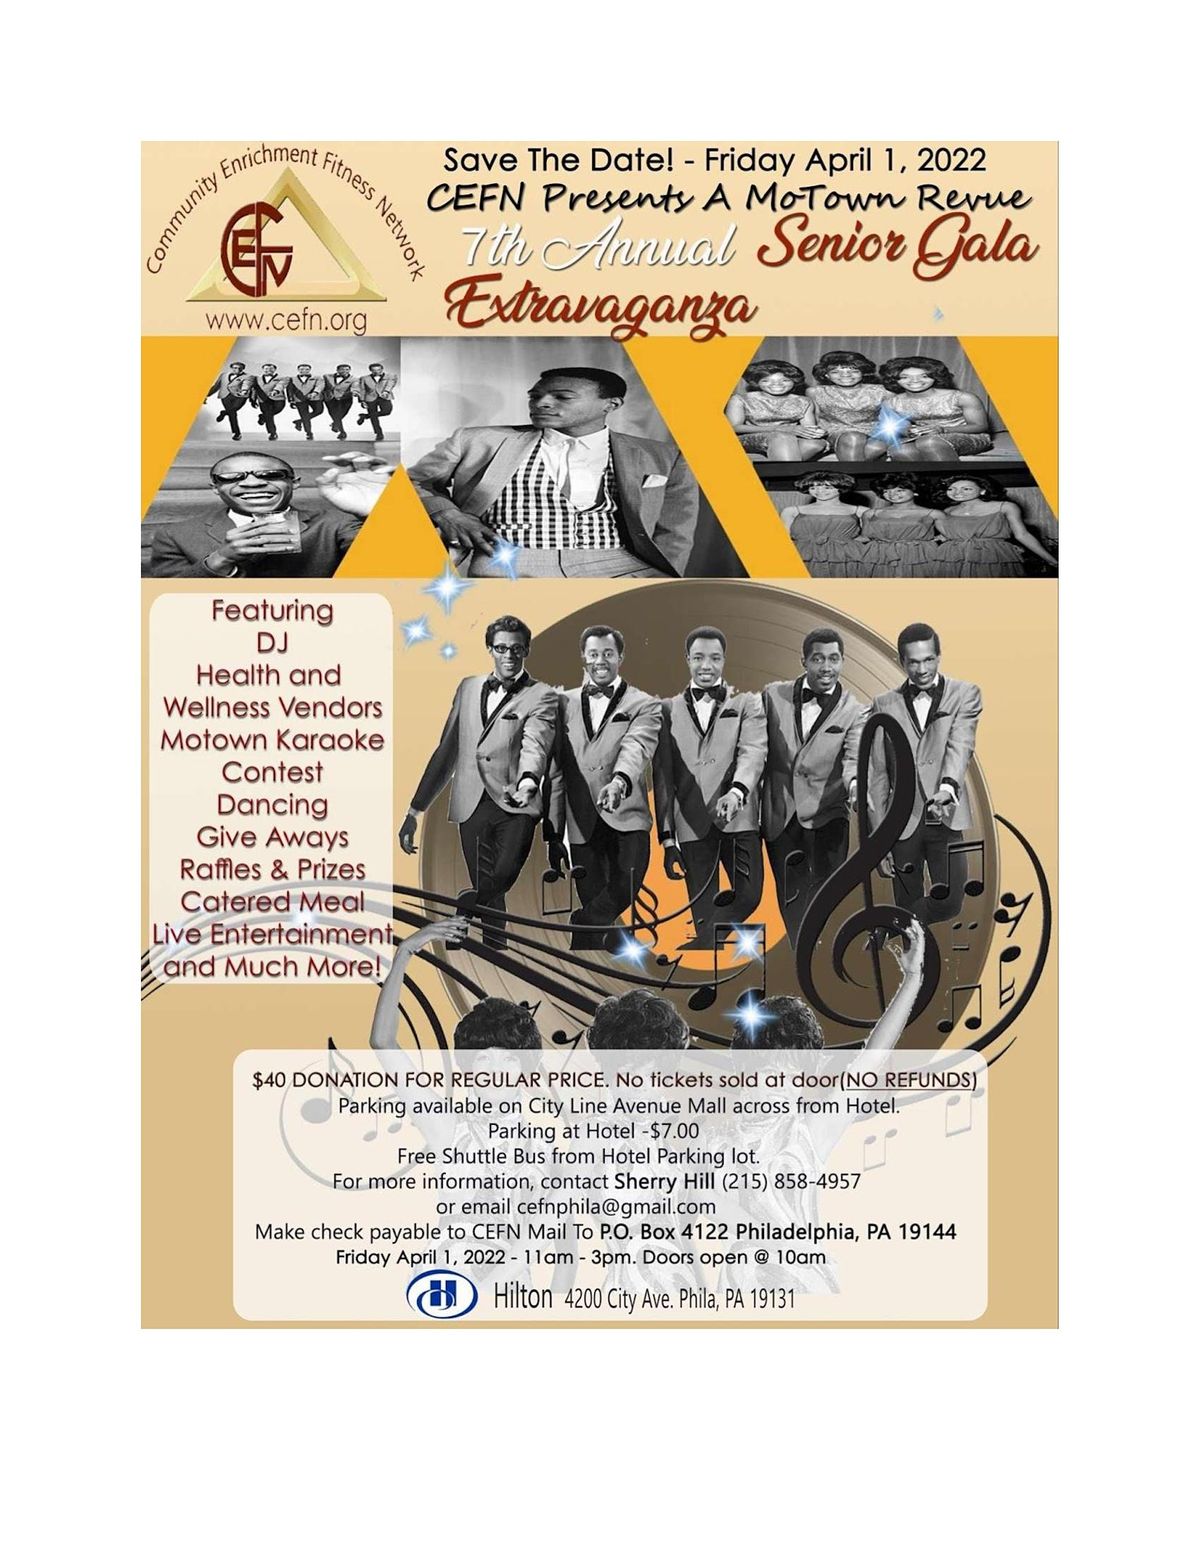 A Motown Revue: CEFN's 7th Annual Senior Gala Extravaganza